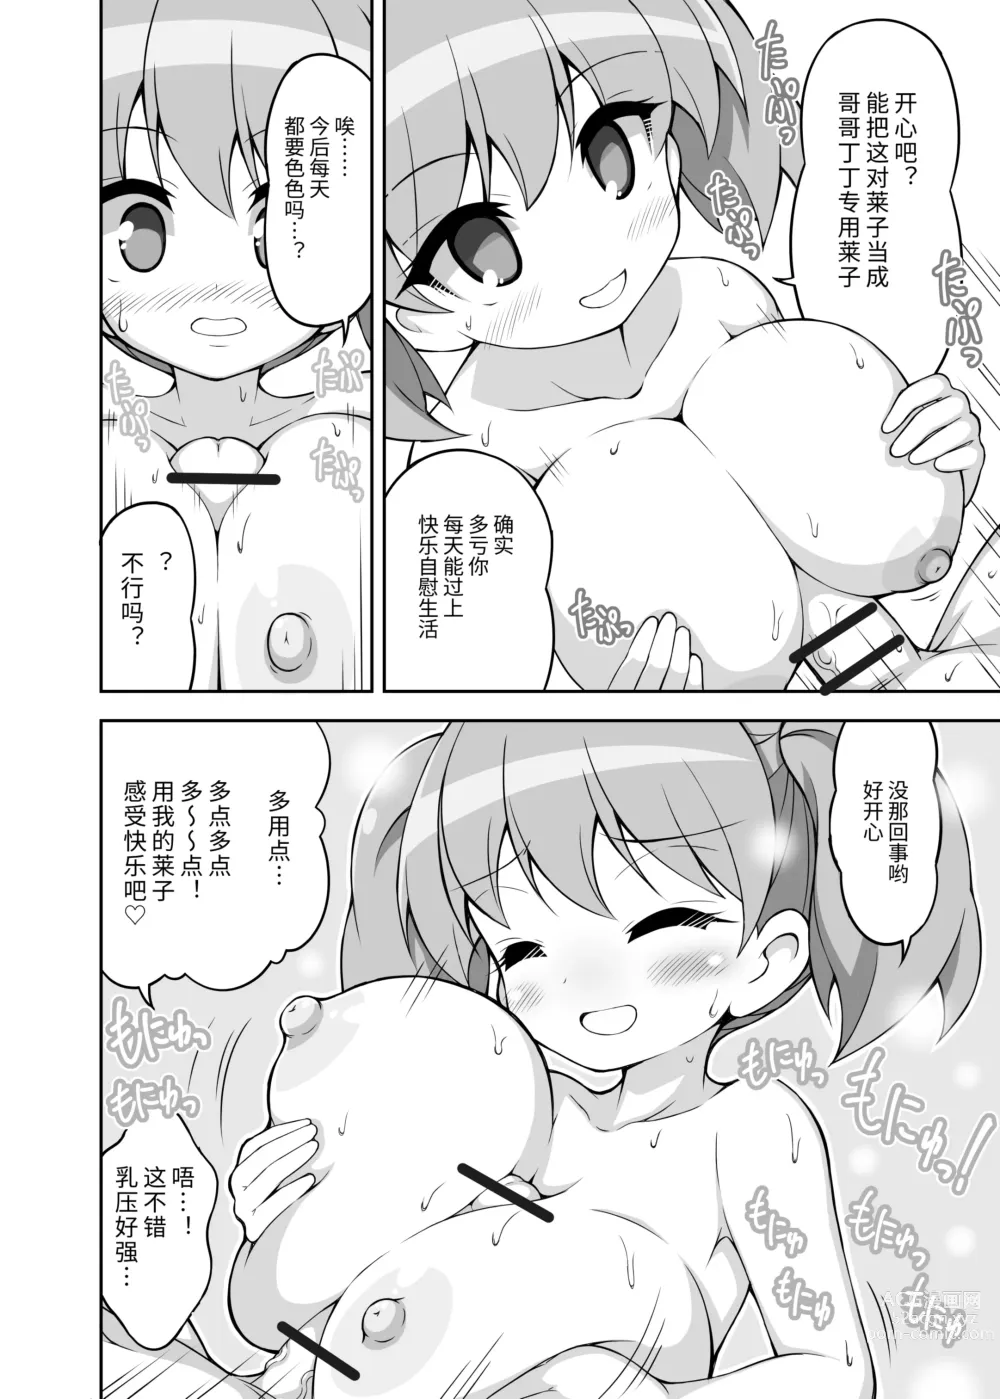 Page 88 of manga 乳交专业杂志《绝对乳夹射》Vol.3